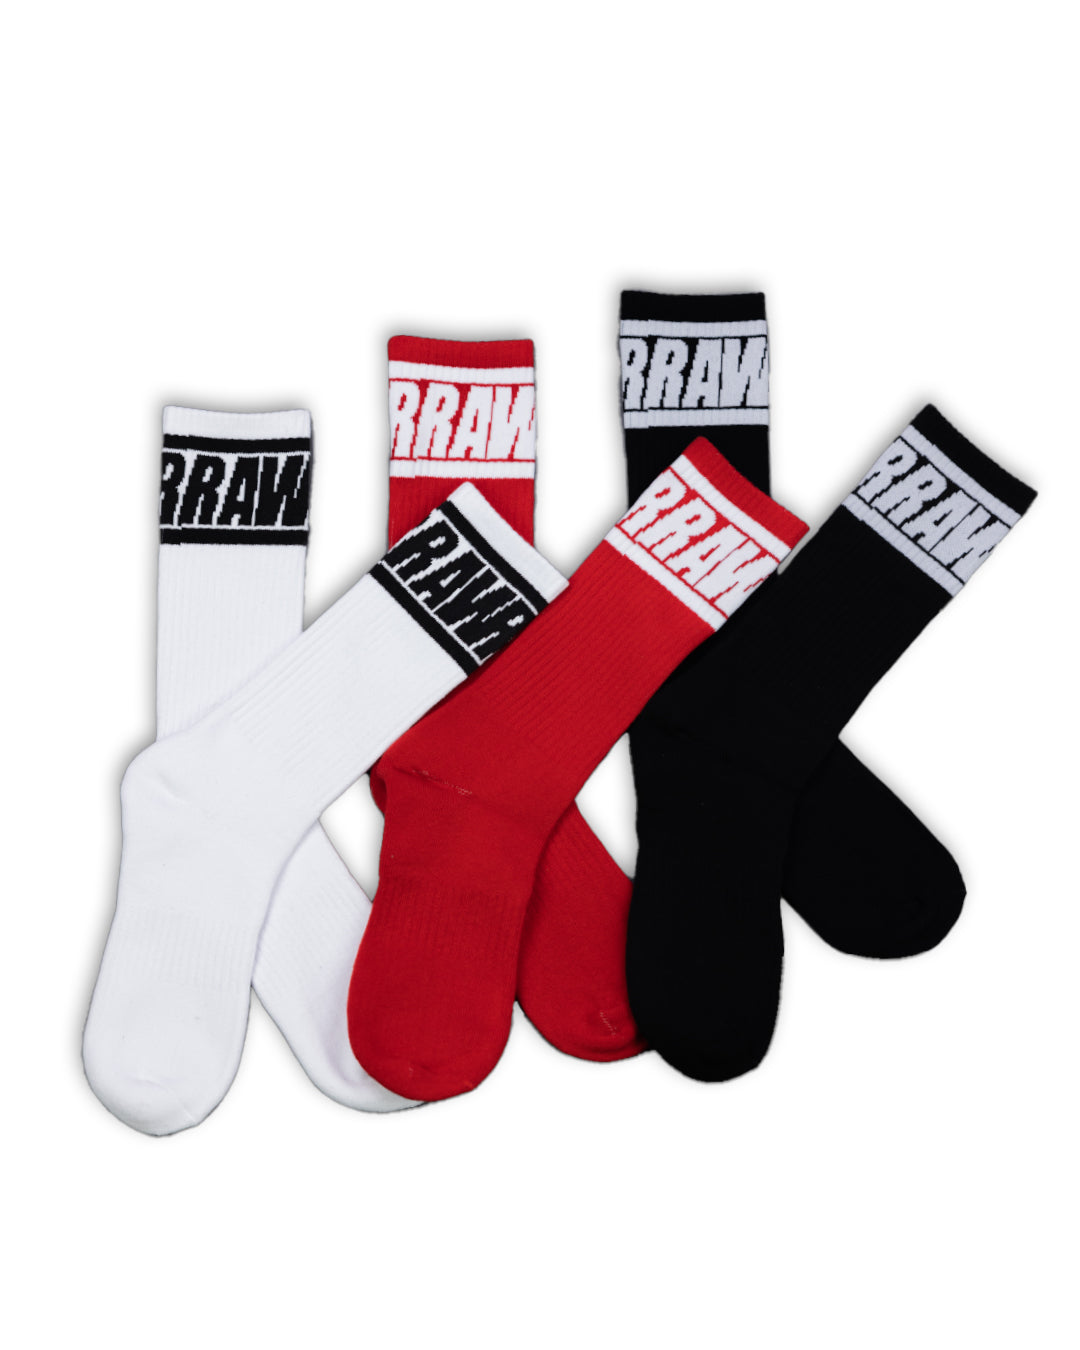 Raw Socks